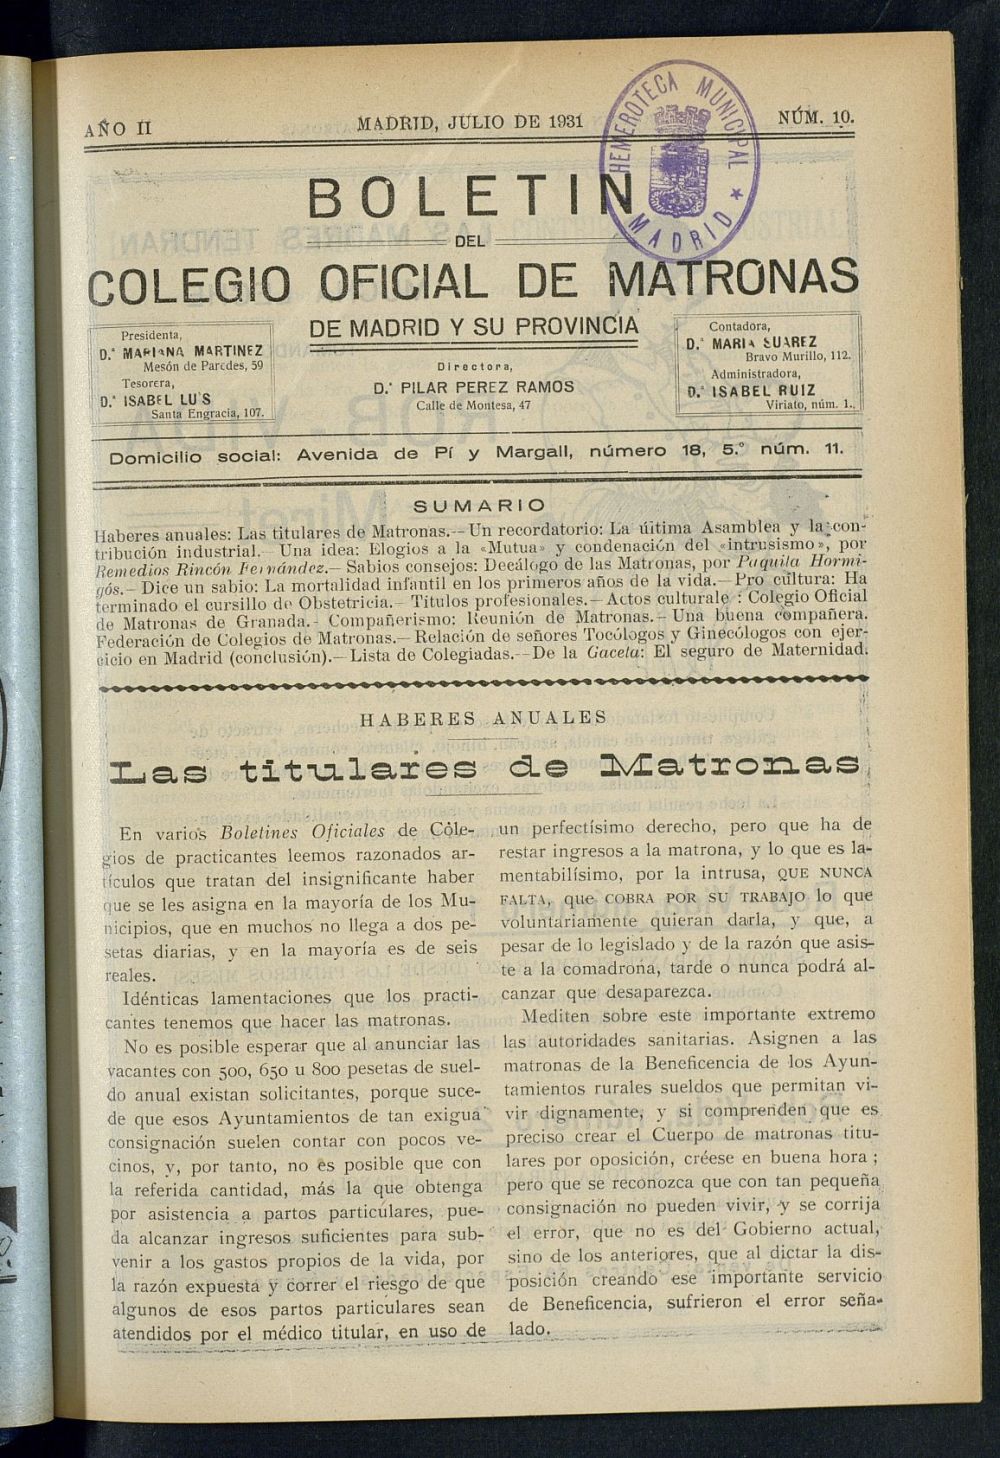 Boletn del Colegio Oficial de Matronas de Madrid y su Provincia de julio de 1931